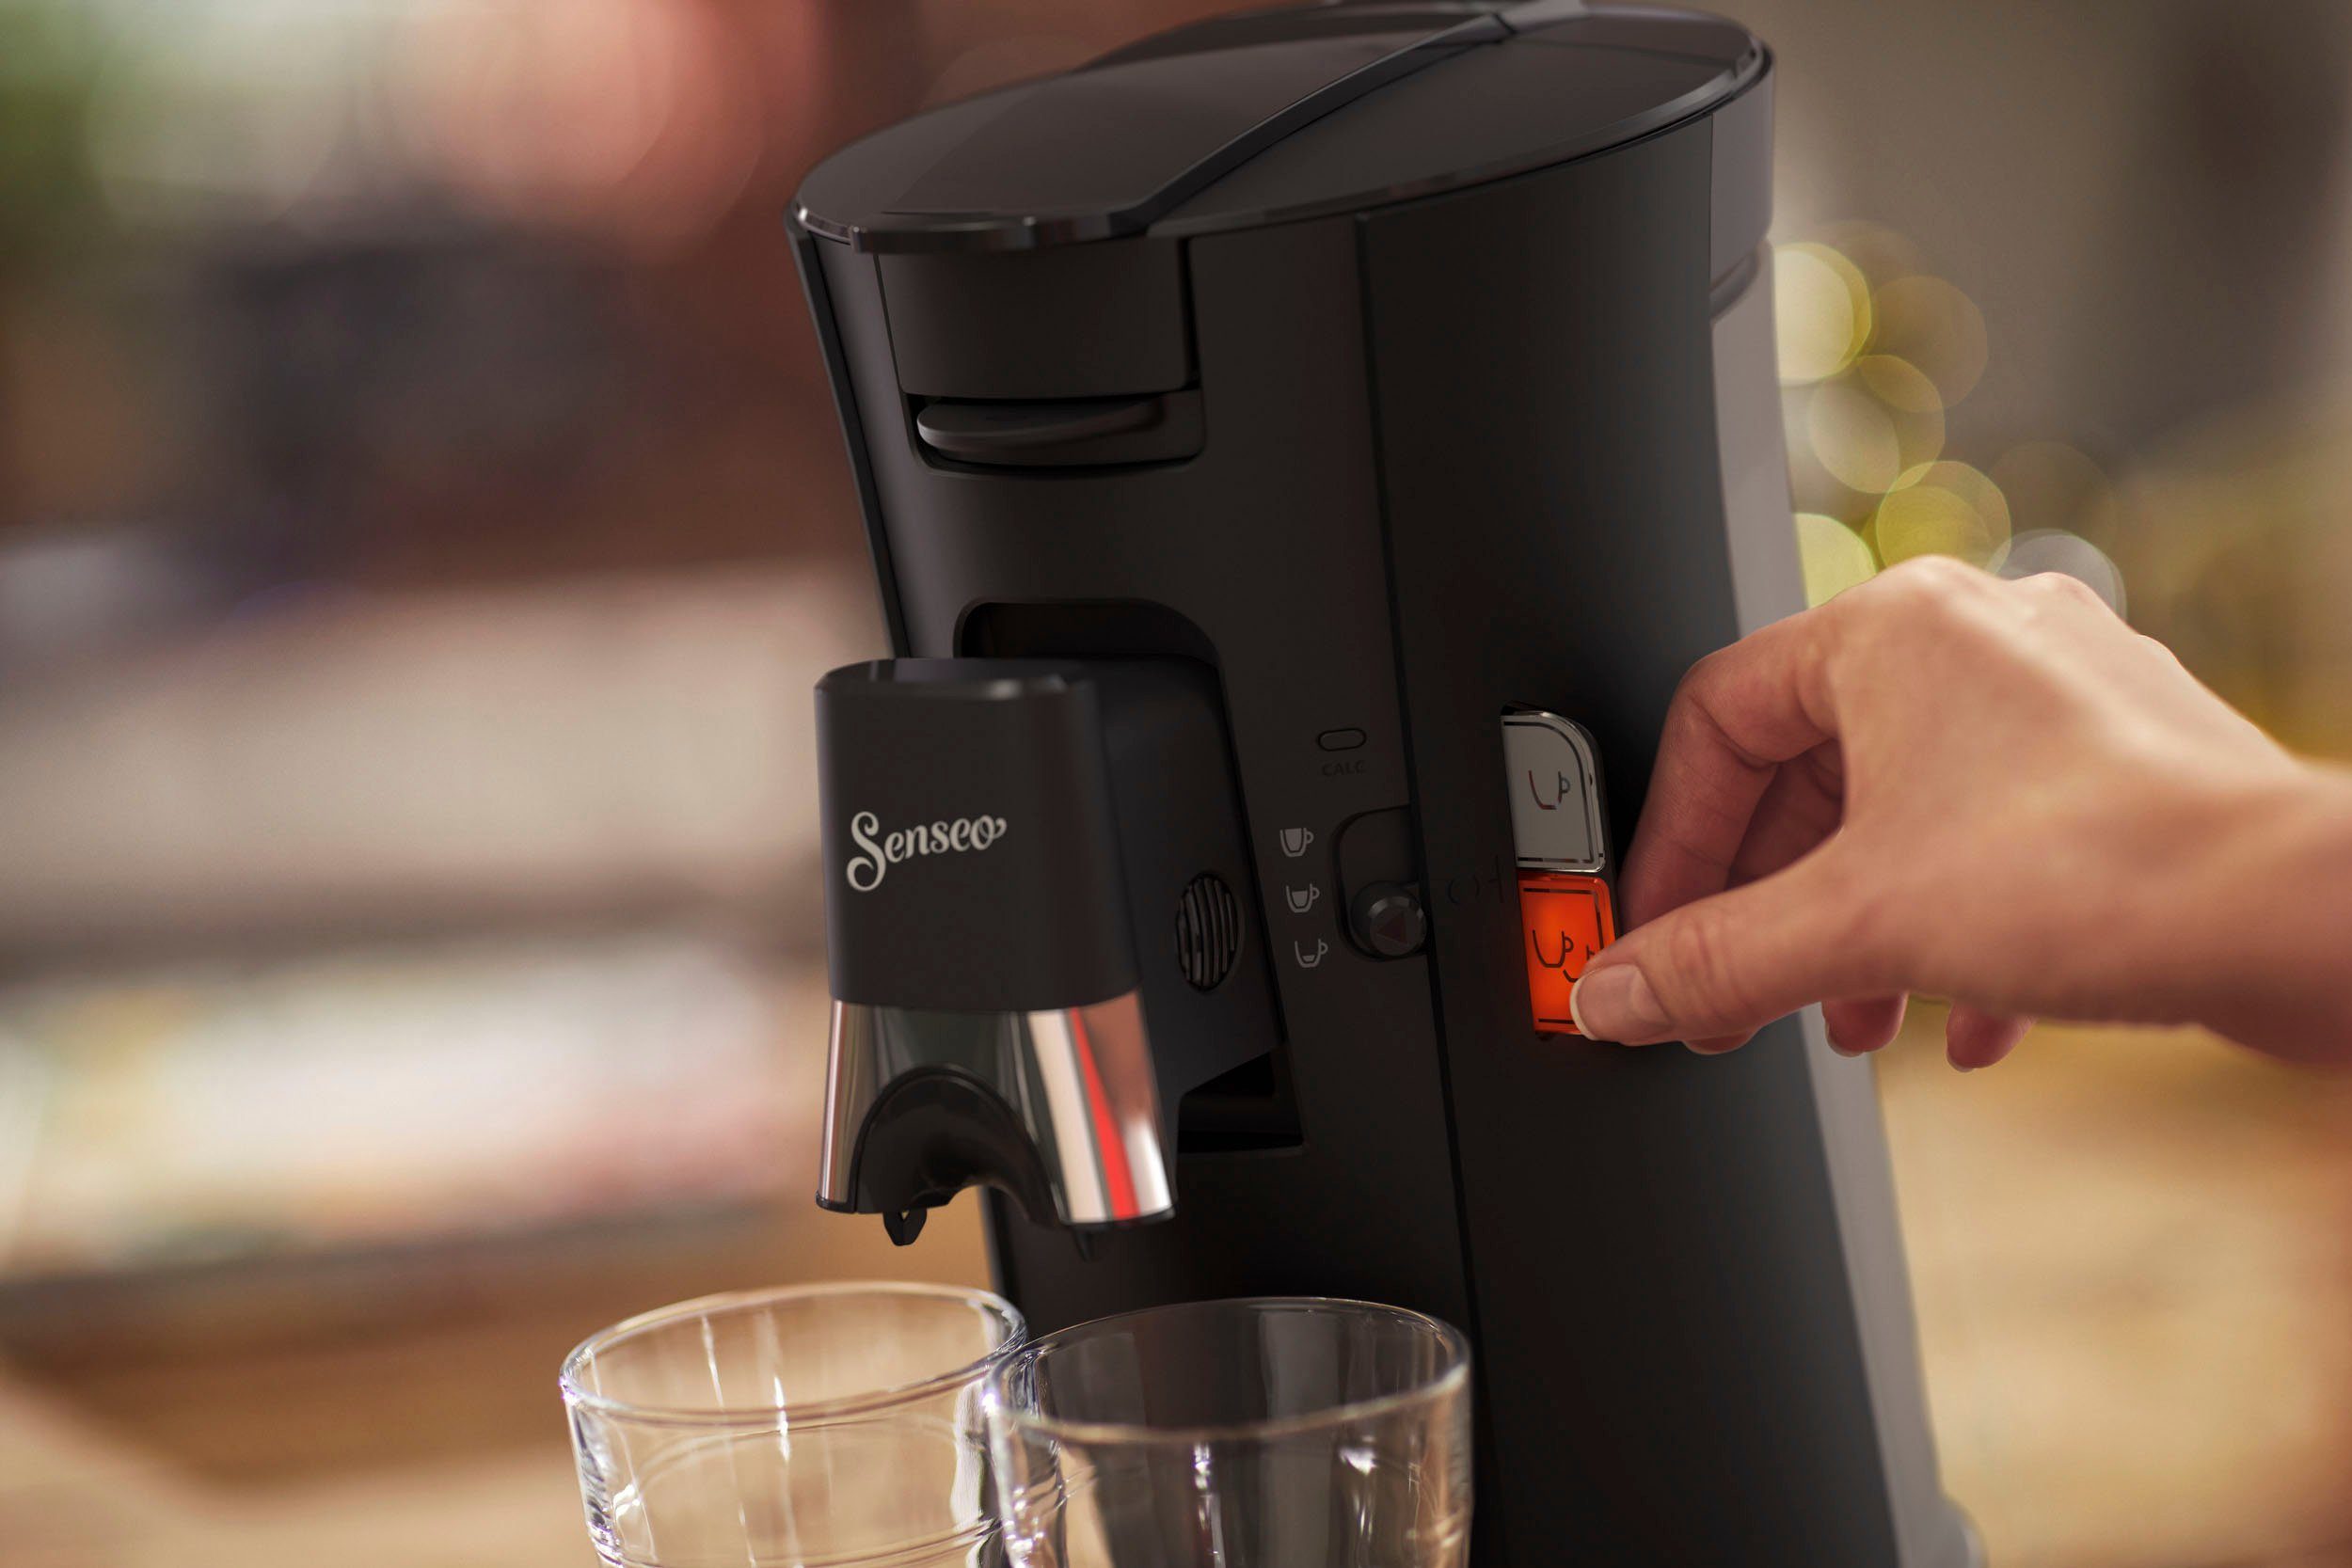 bis recyceltem max.33 Plus, Kaffeespezialitäten, Philips und Select CSA230/69, Pads € Plastik, Senseo 100 21% und Crema Senseo +3 kaufen Kaffeepadmaschine aus zurückerhalten